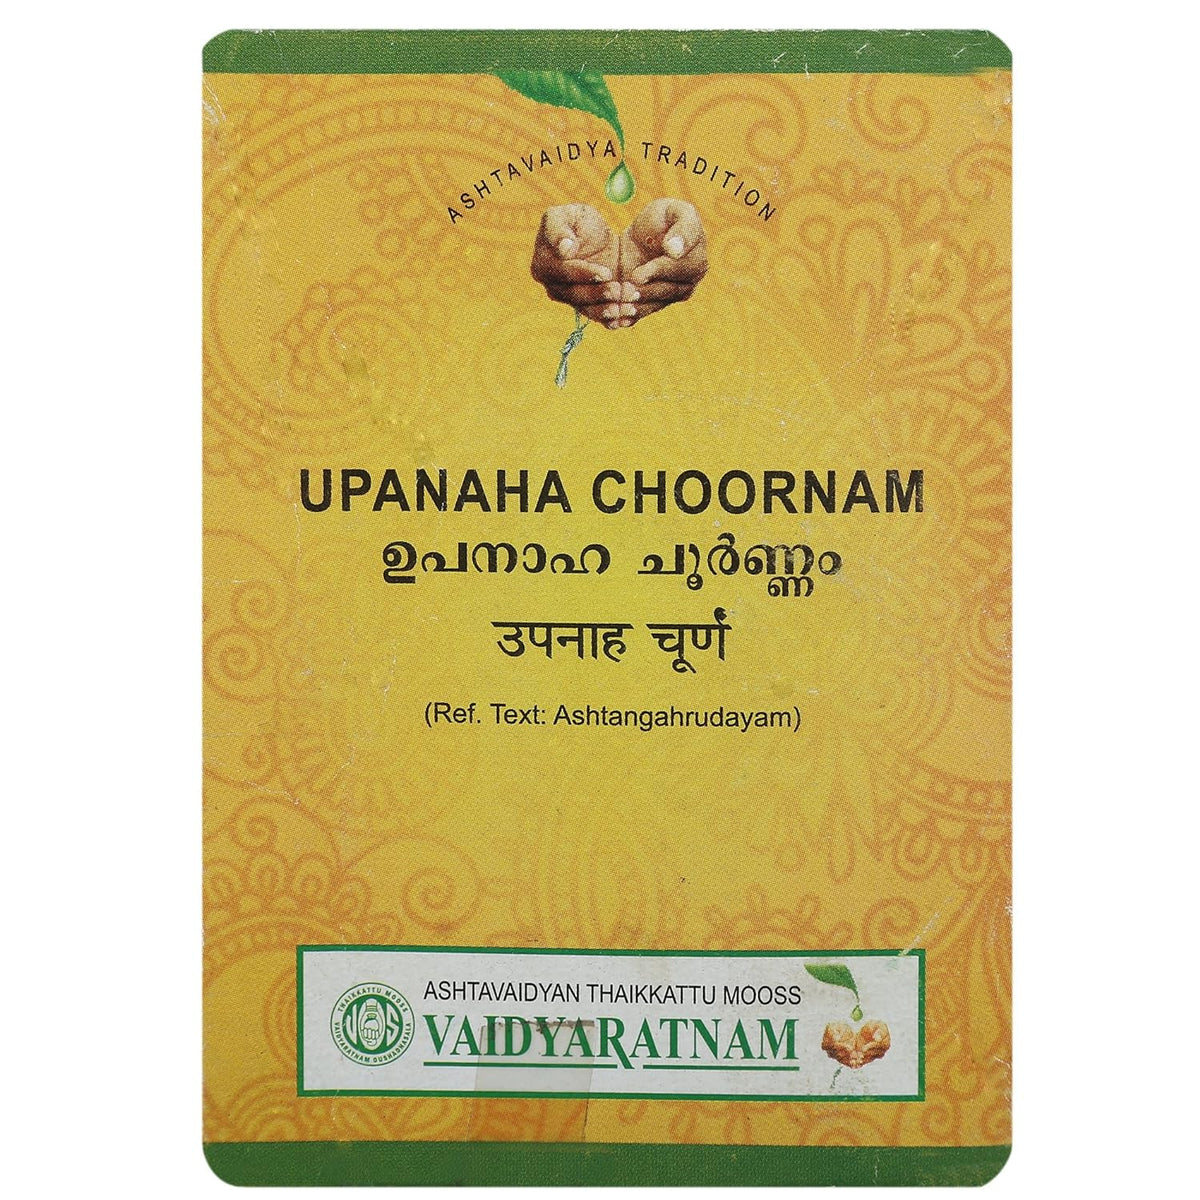 Vaidyaratnam Ayurvedic Upanaha choornam Powder 100gm